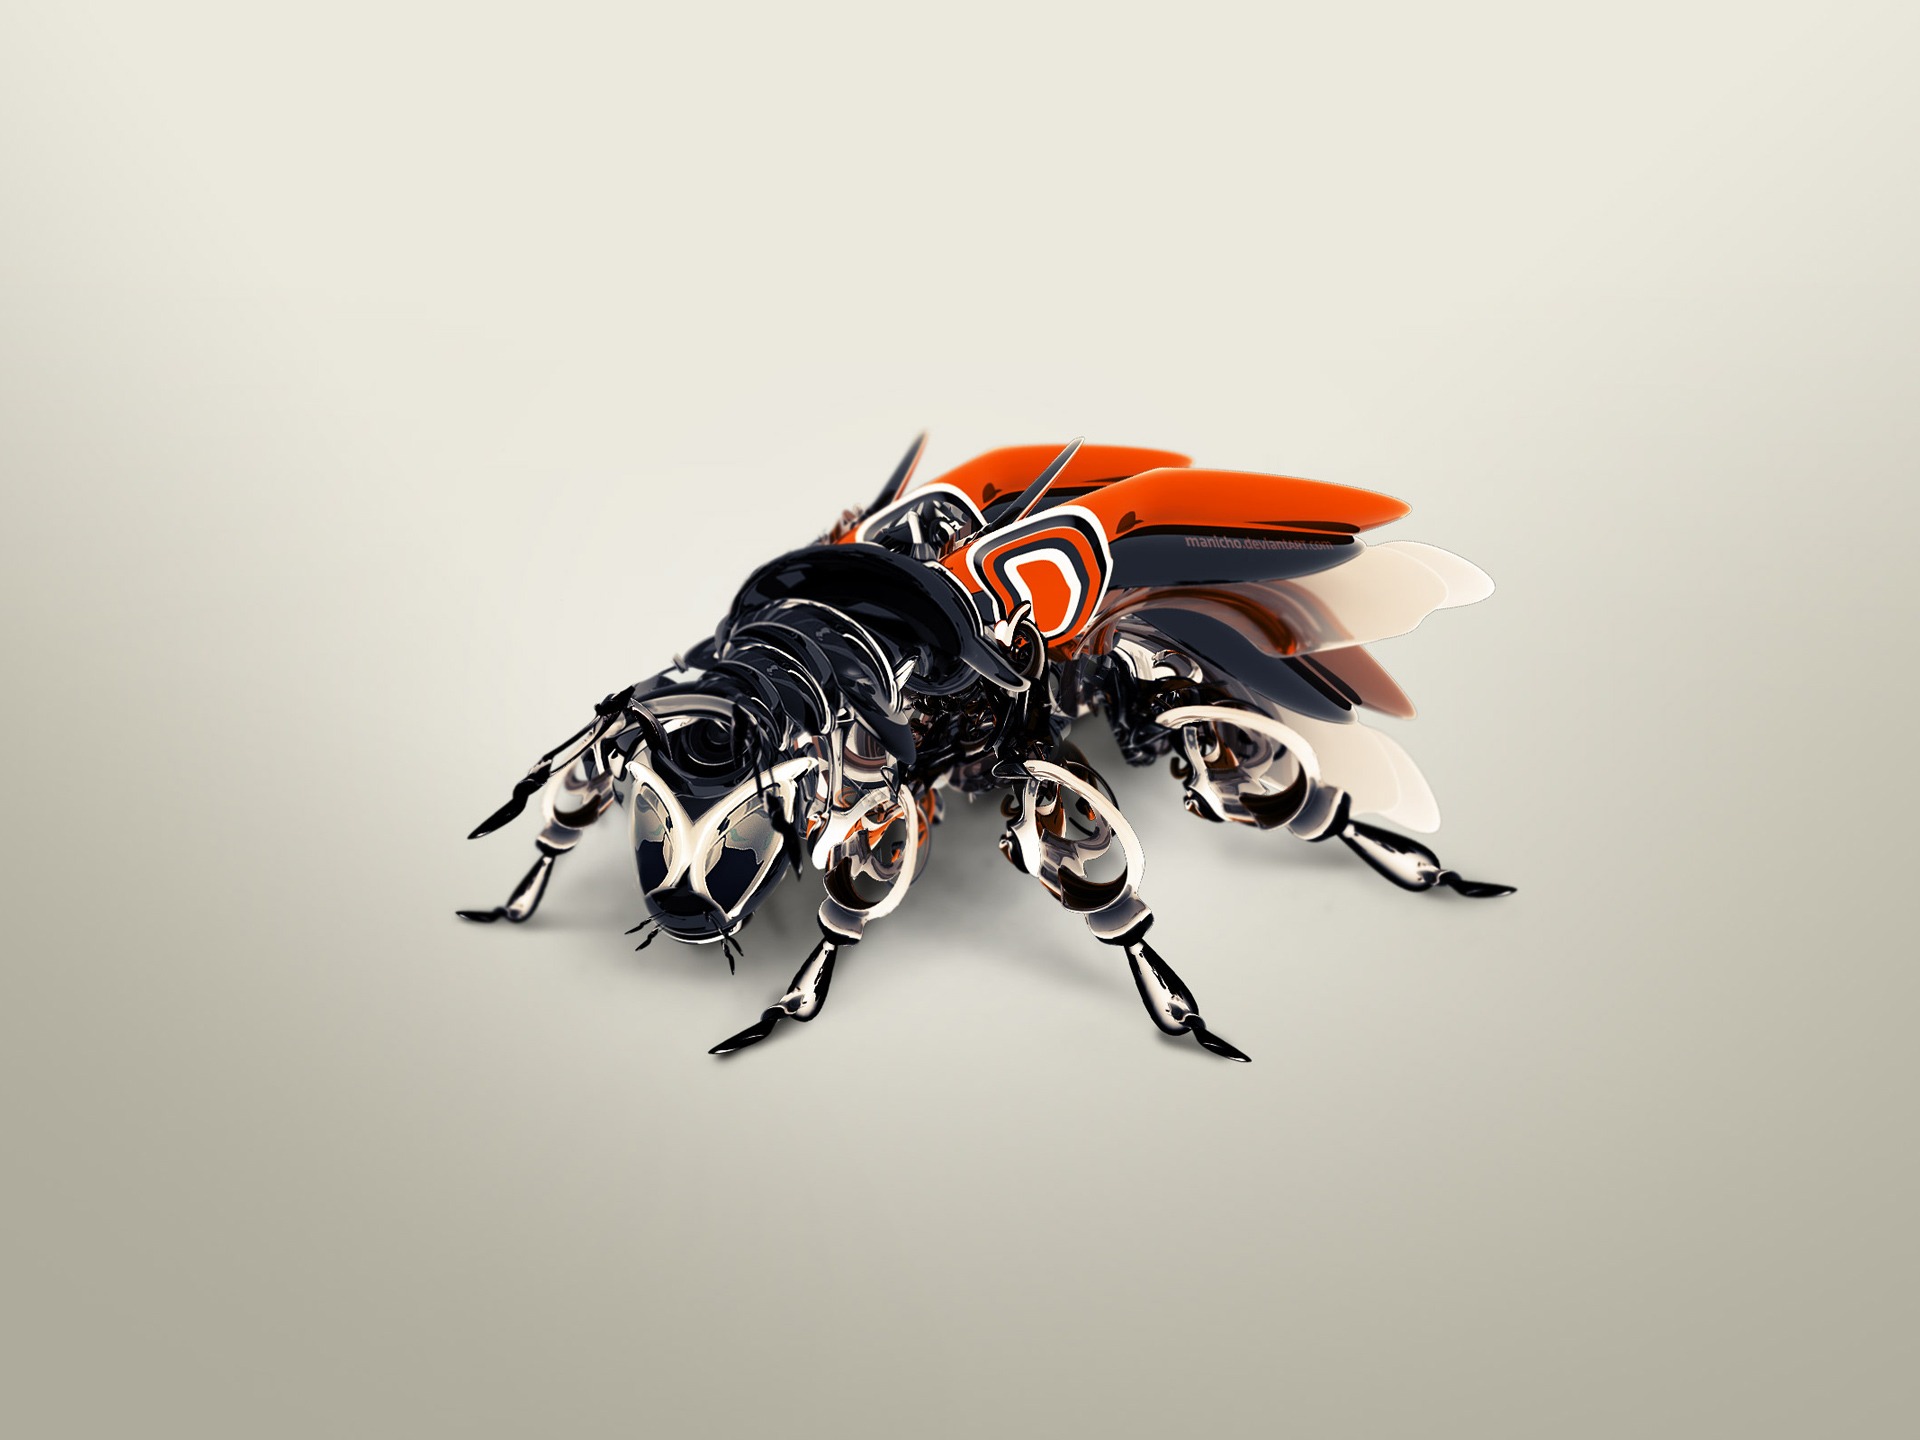 161640 descargar imagen insecto, ciencia ficción, robot, cgi, mosca: fondos de pantalla y protectores de pantalla gratis